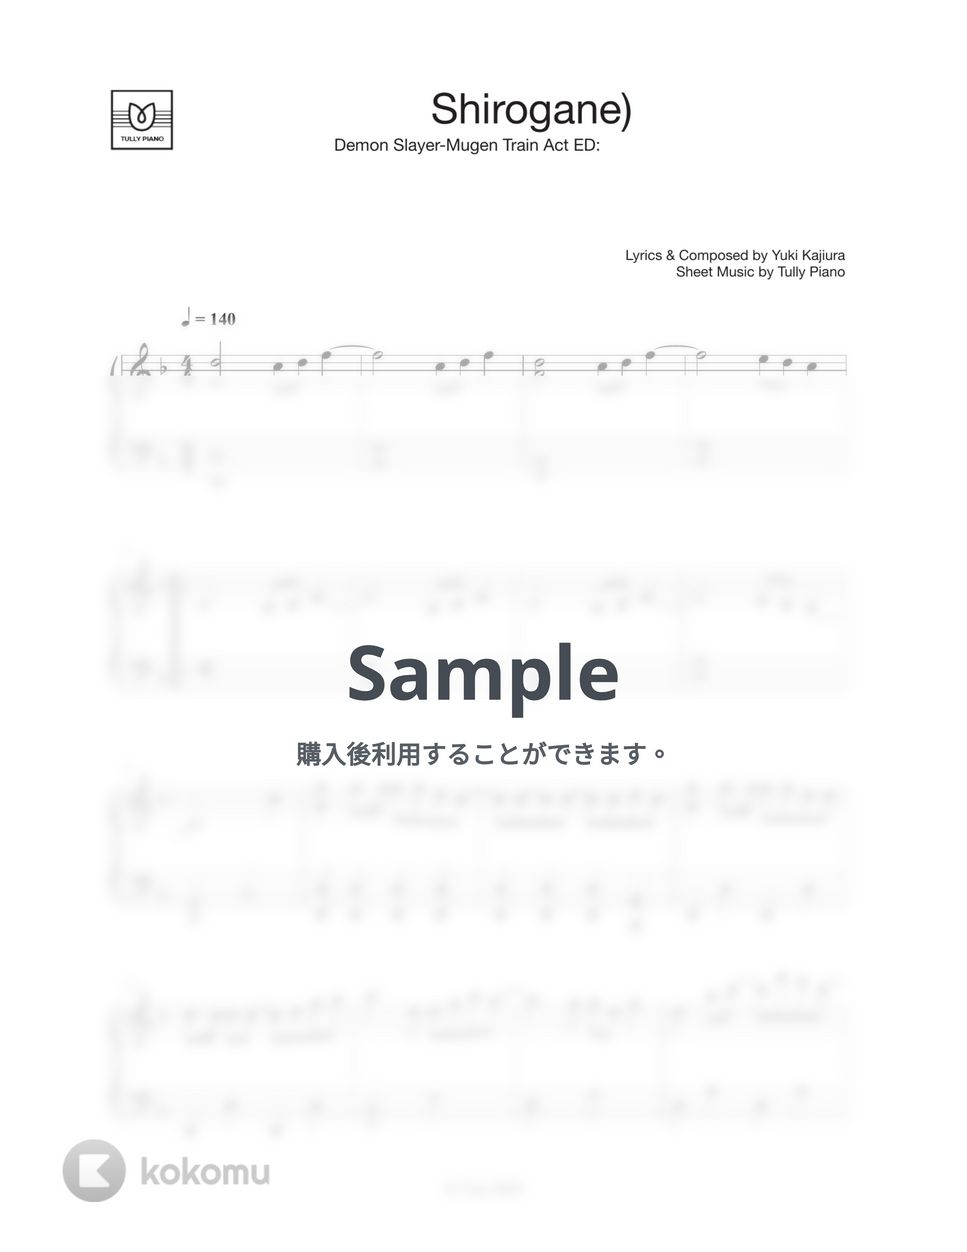 鬼滅の刃 無限列車編 - 白銀 (Easy ver.) by Tully Piano